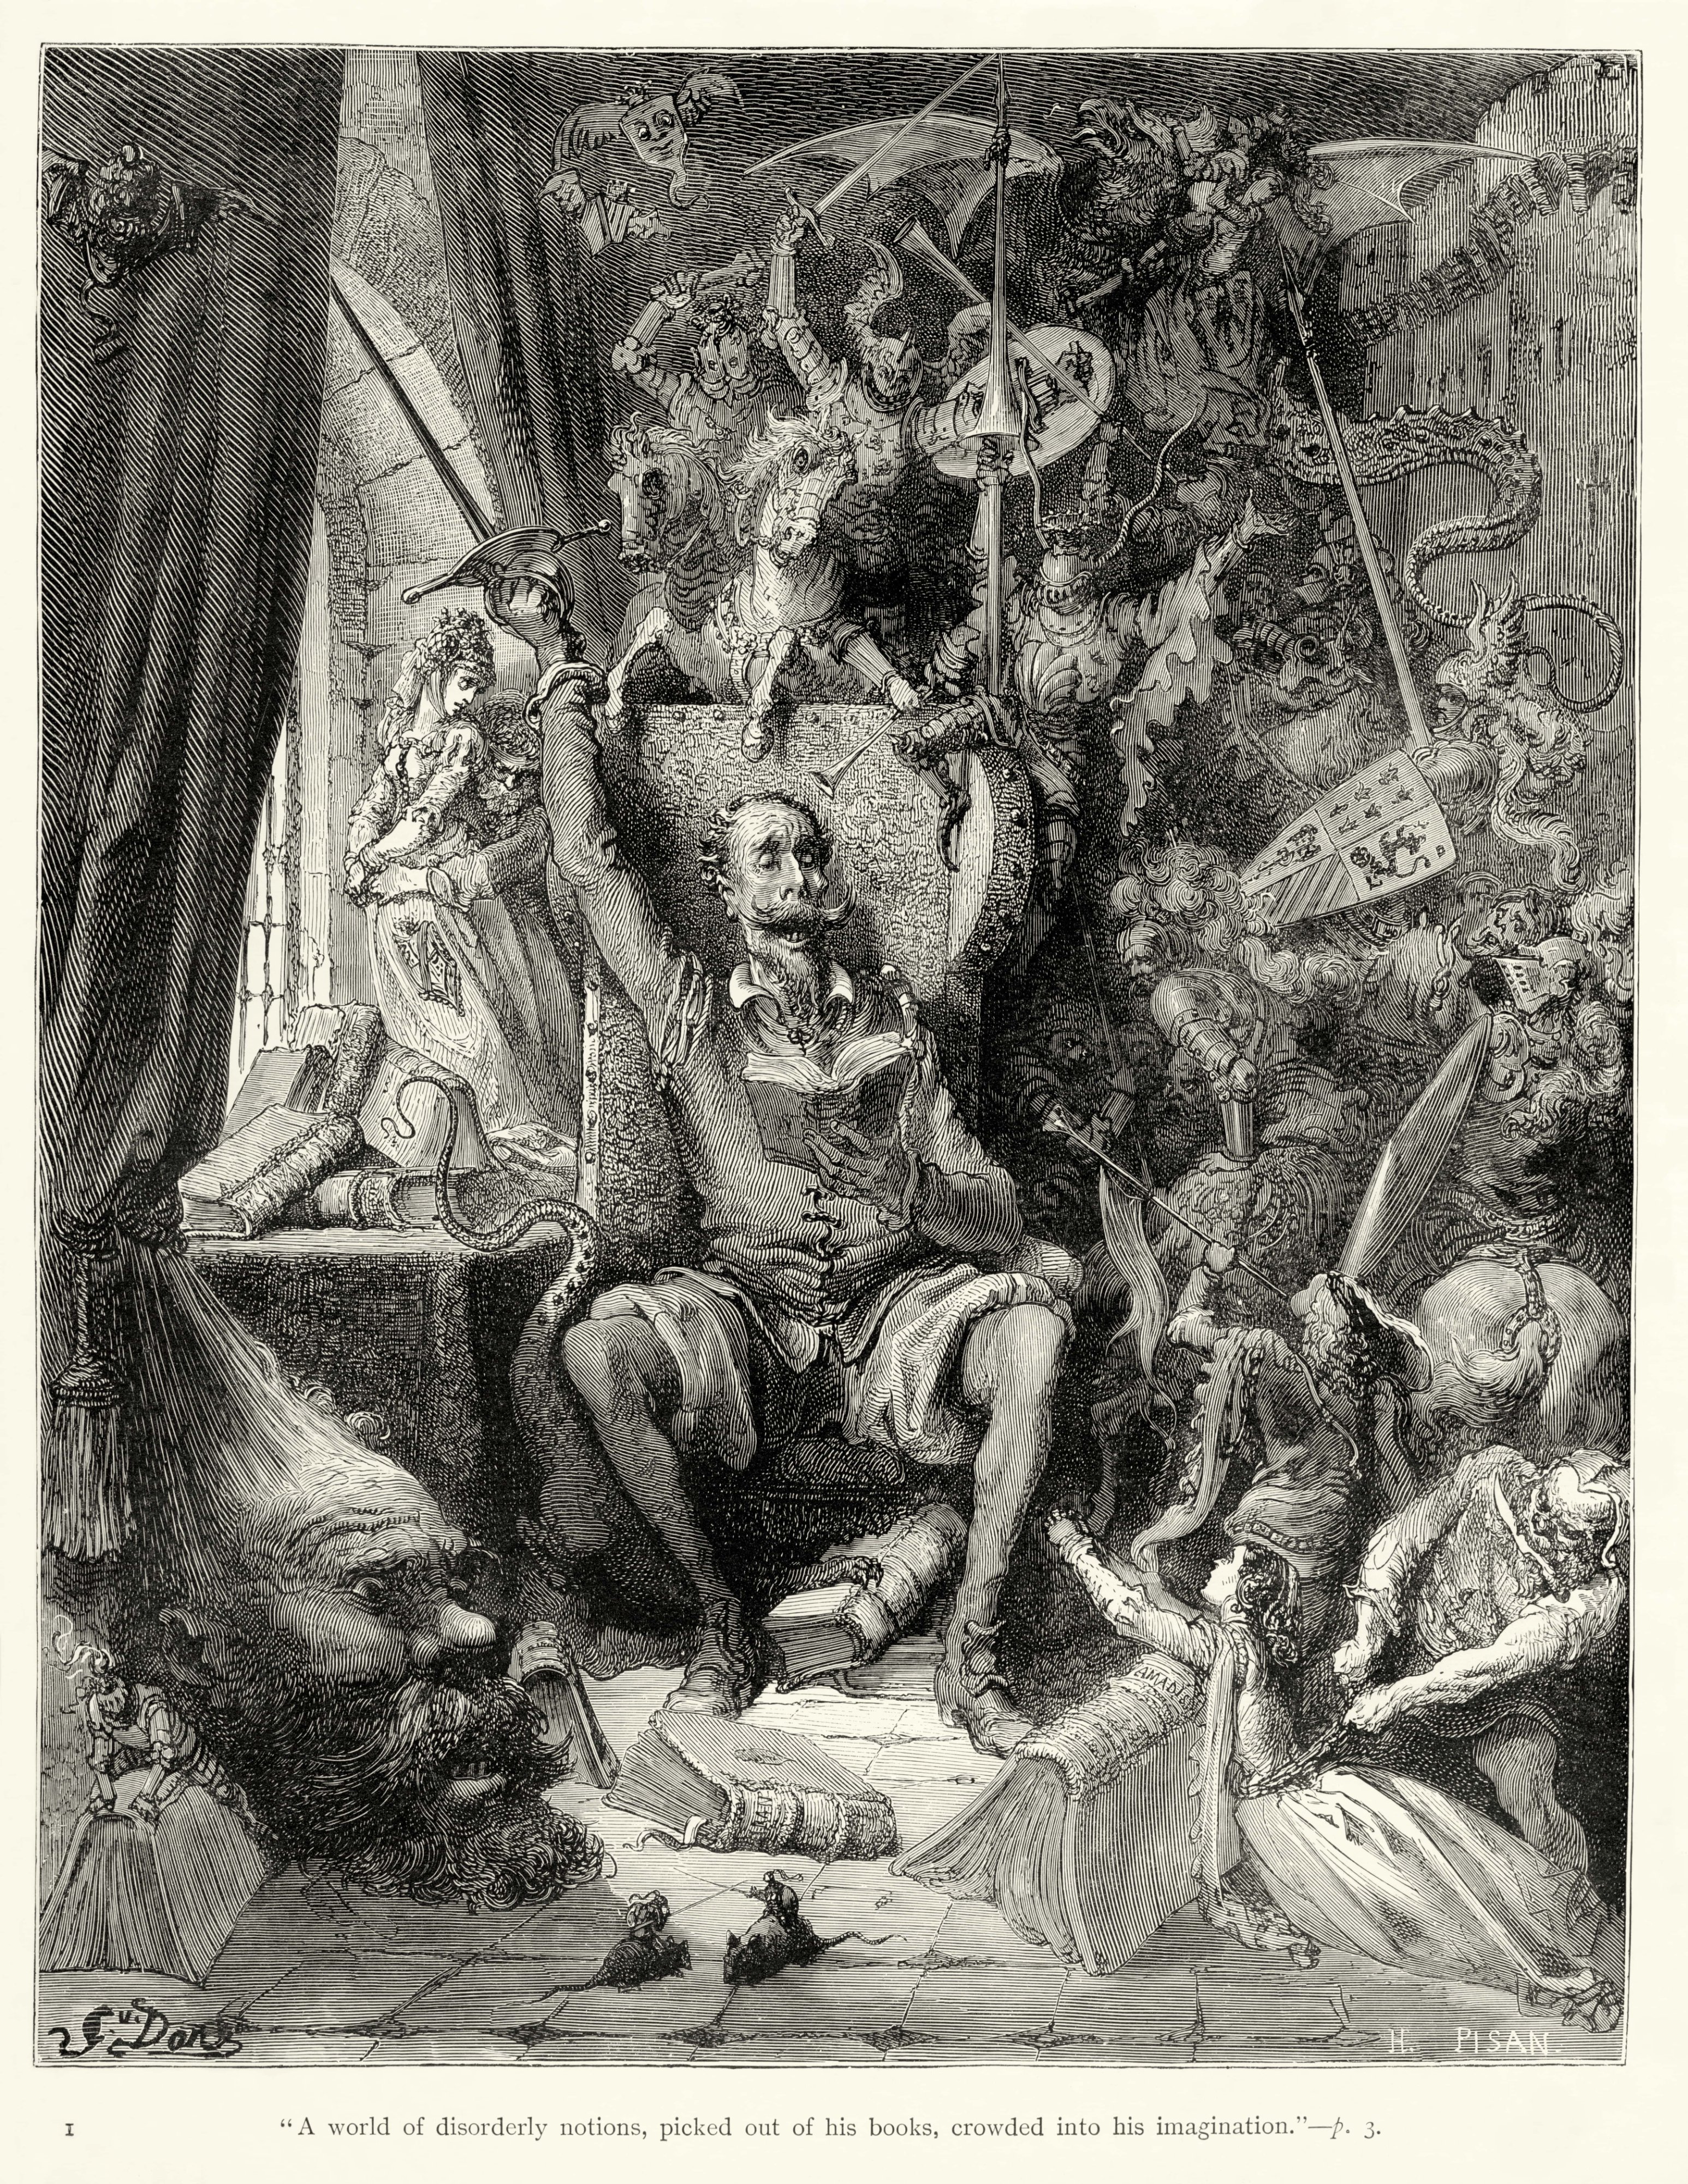 En illustration af den franske kunstner Gustave Doré (1832-1883) fra januar 1863. Den gode Don Quixote er blevet gal efter at have læst for mange ridderromaner og drager nu ud på sin egen ridderfærd.